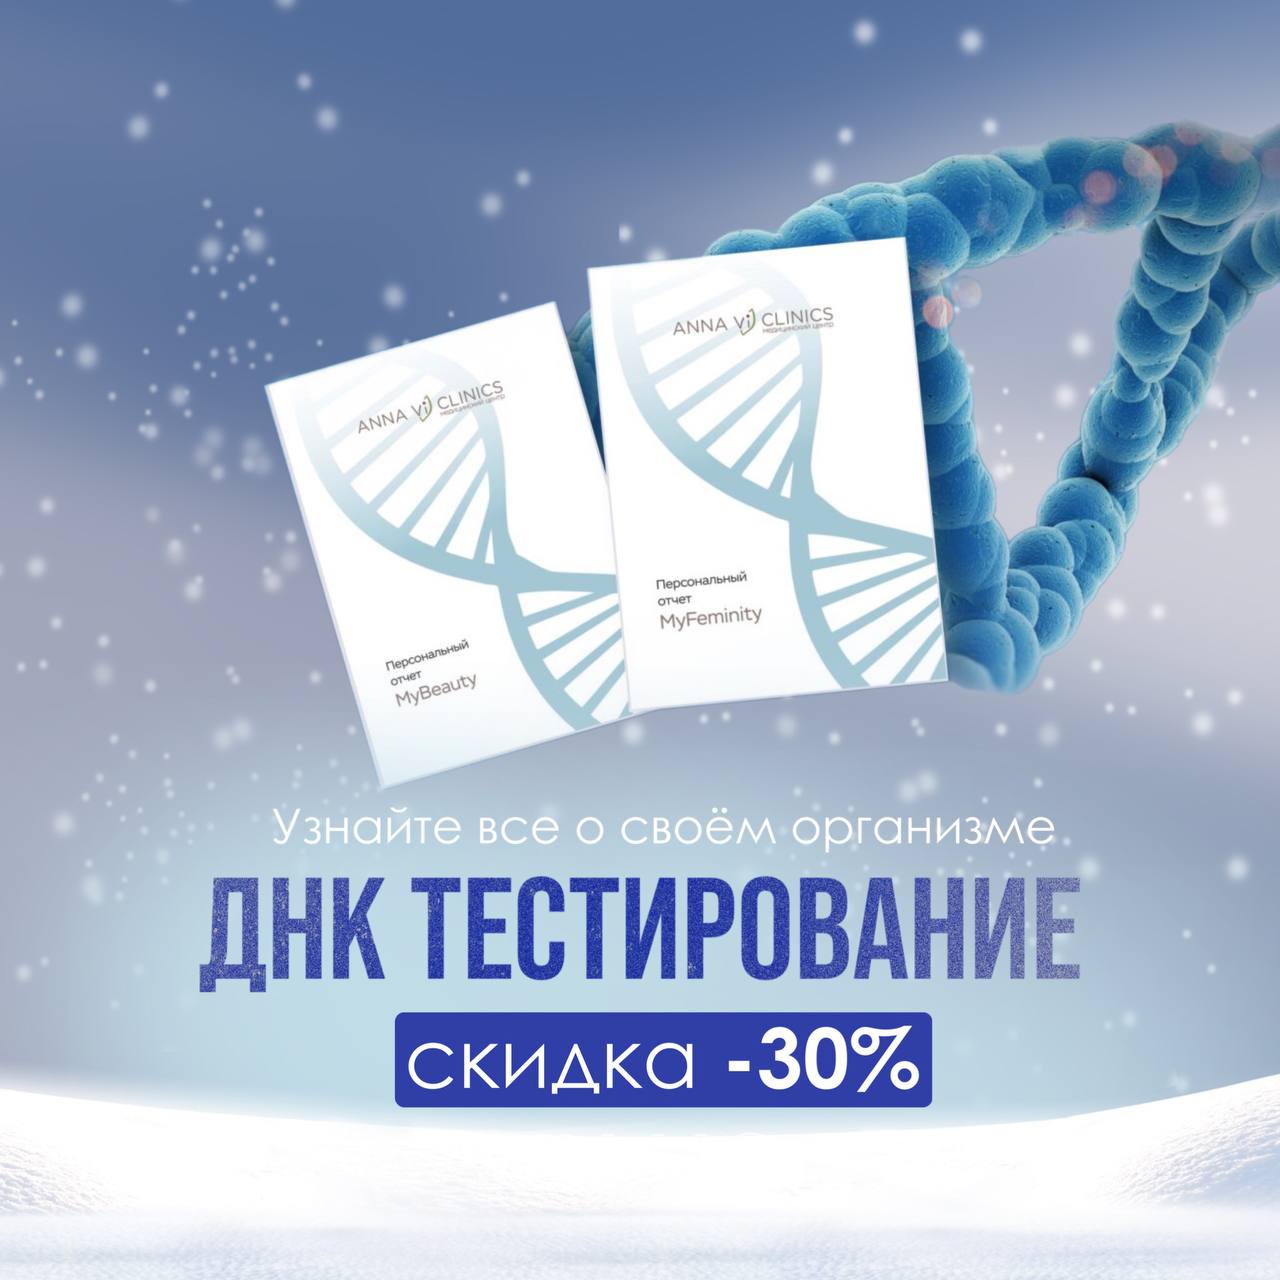 ДНК тестирование со скидкой -30%